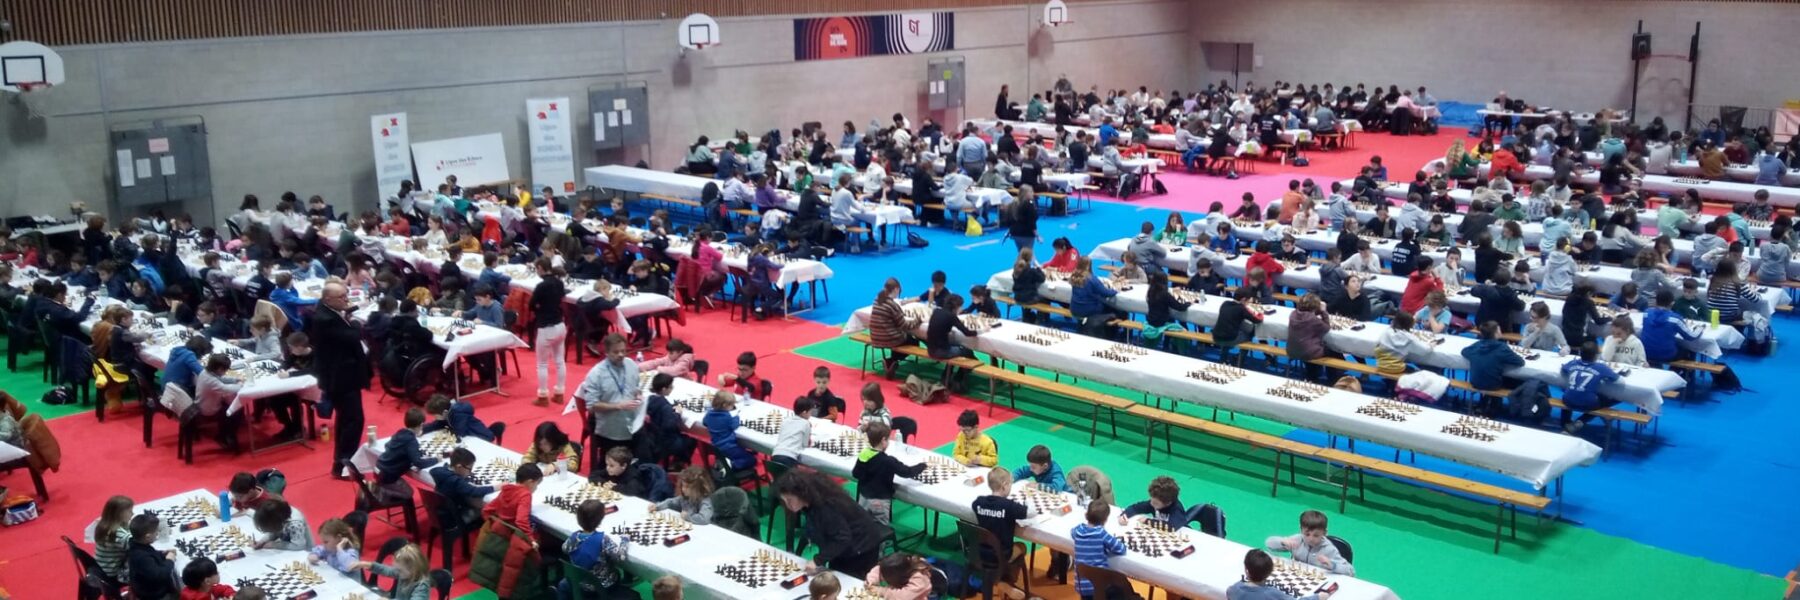 L'Isle jourdain a parfaitement su organiser un Championnat d'Occitanie digne des plus grands tournois français !